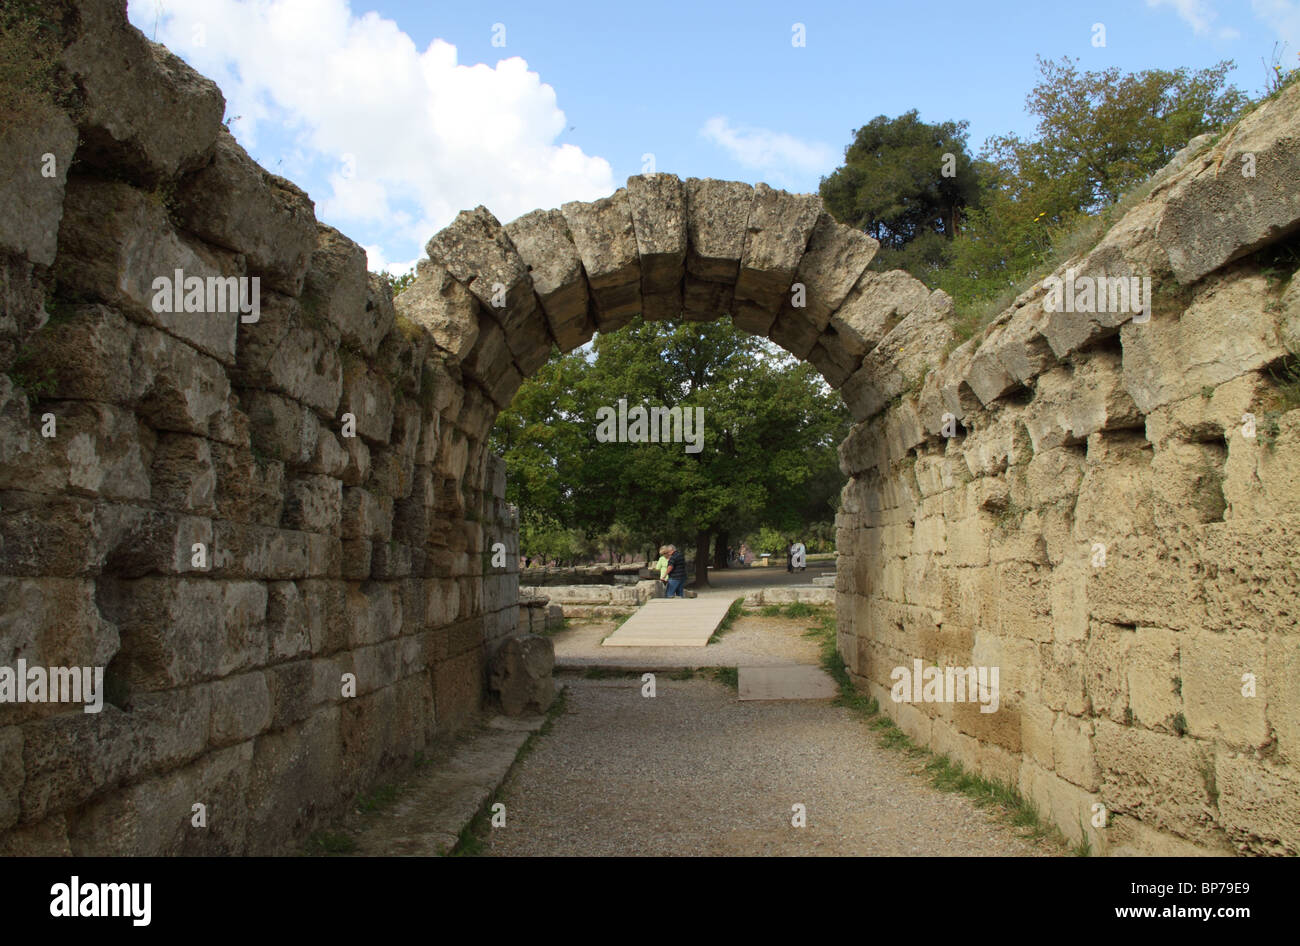 Ingresso allo stadio, sito archeologico, Antica Olympia, Ilia, Peloponneso, Grecia Foto Stock